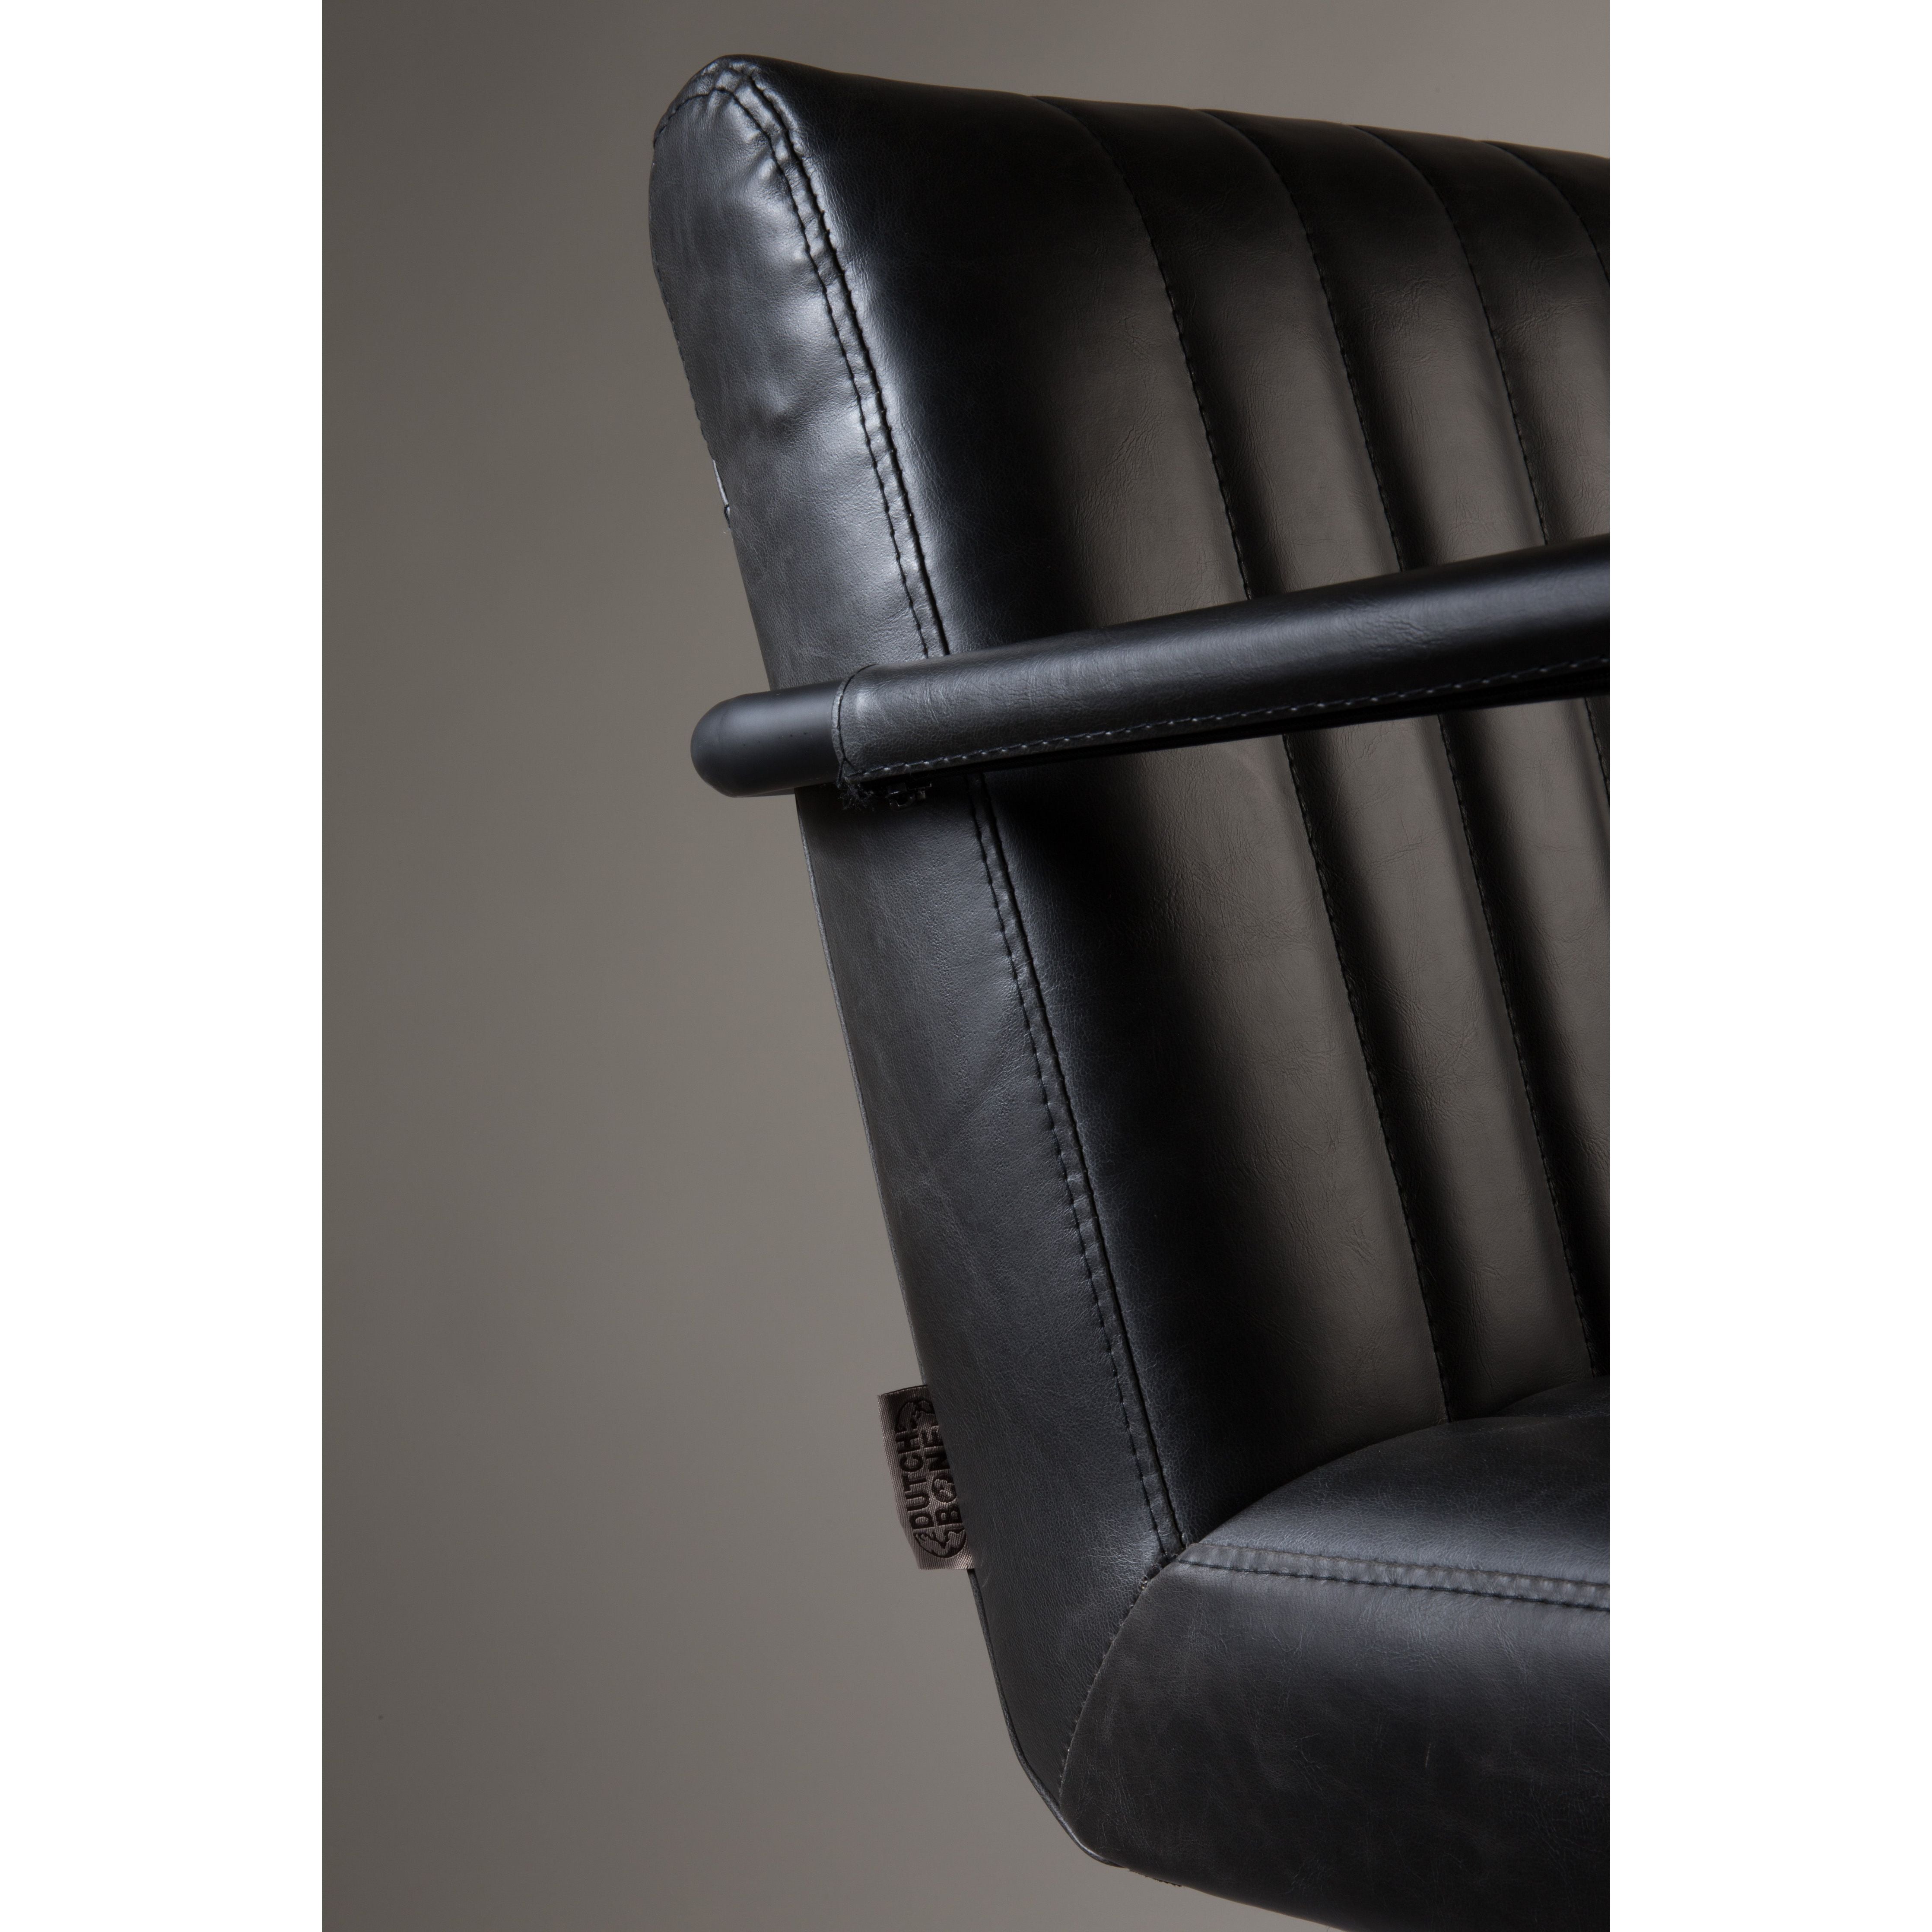 Armchair stitched dark gray | 2 pieces